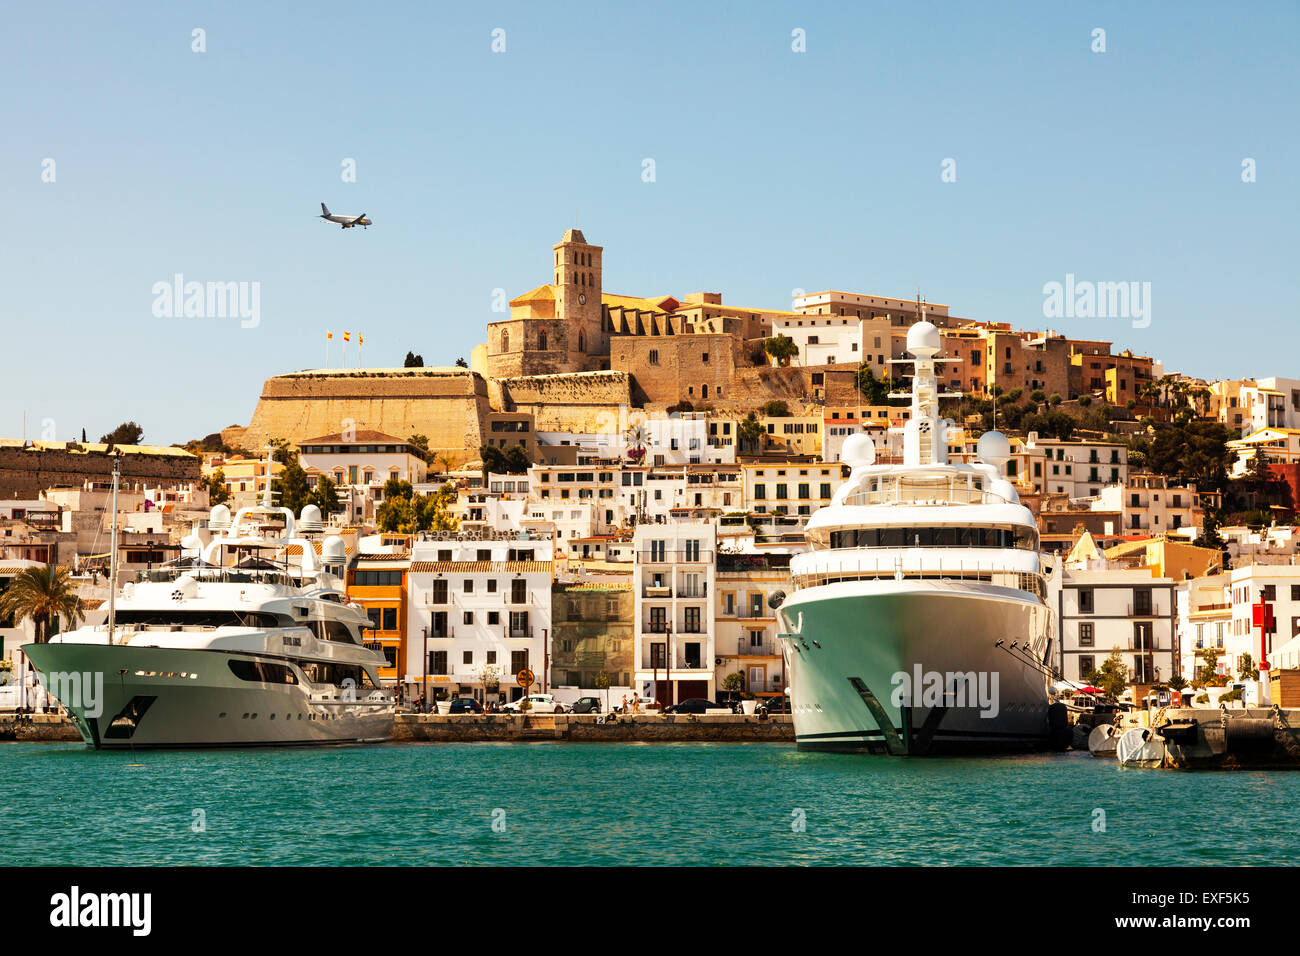 Ibiza città vecchia dal porto di barche in Port Harbour Spagna isola spagnola enormi barche ormeggiate ricco Foto Stock